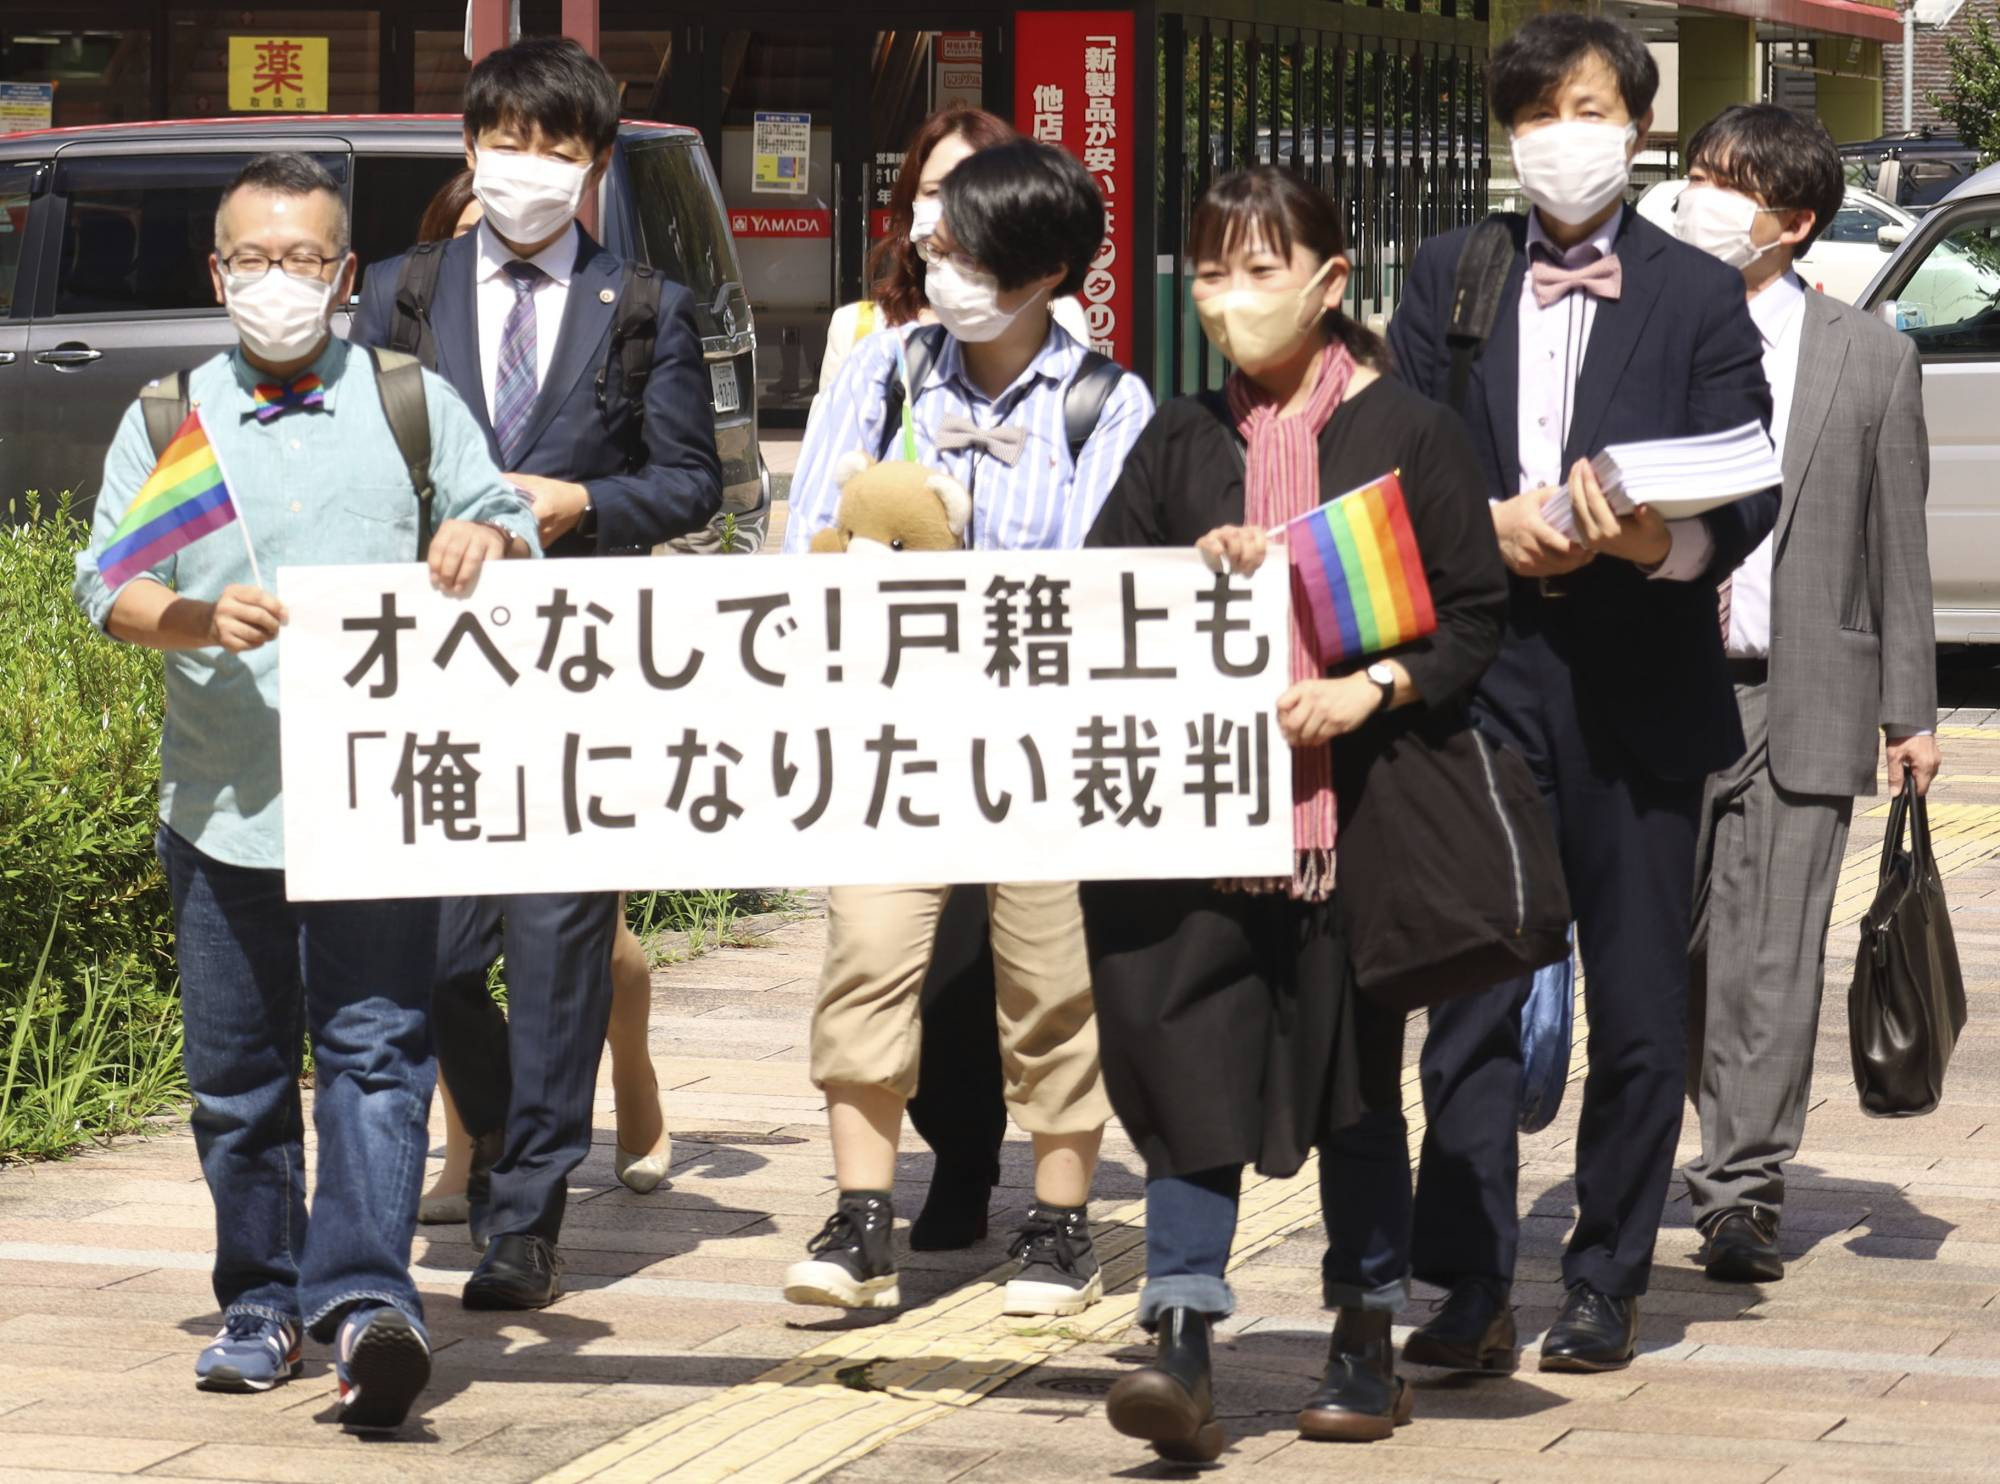 Japonya’da cinsiyetin tanınması için ameliyat şartına karşı karar | Kaos GL - LGBTİ+ Haber Portalı Haber